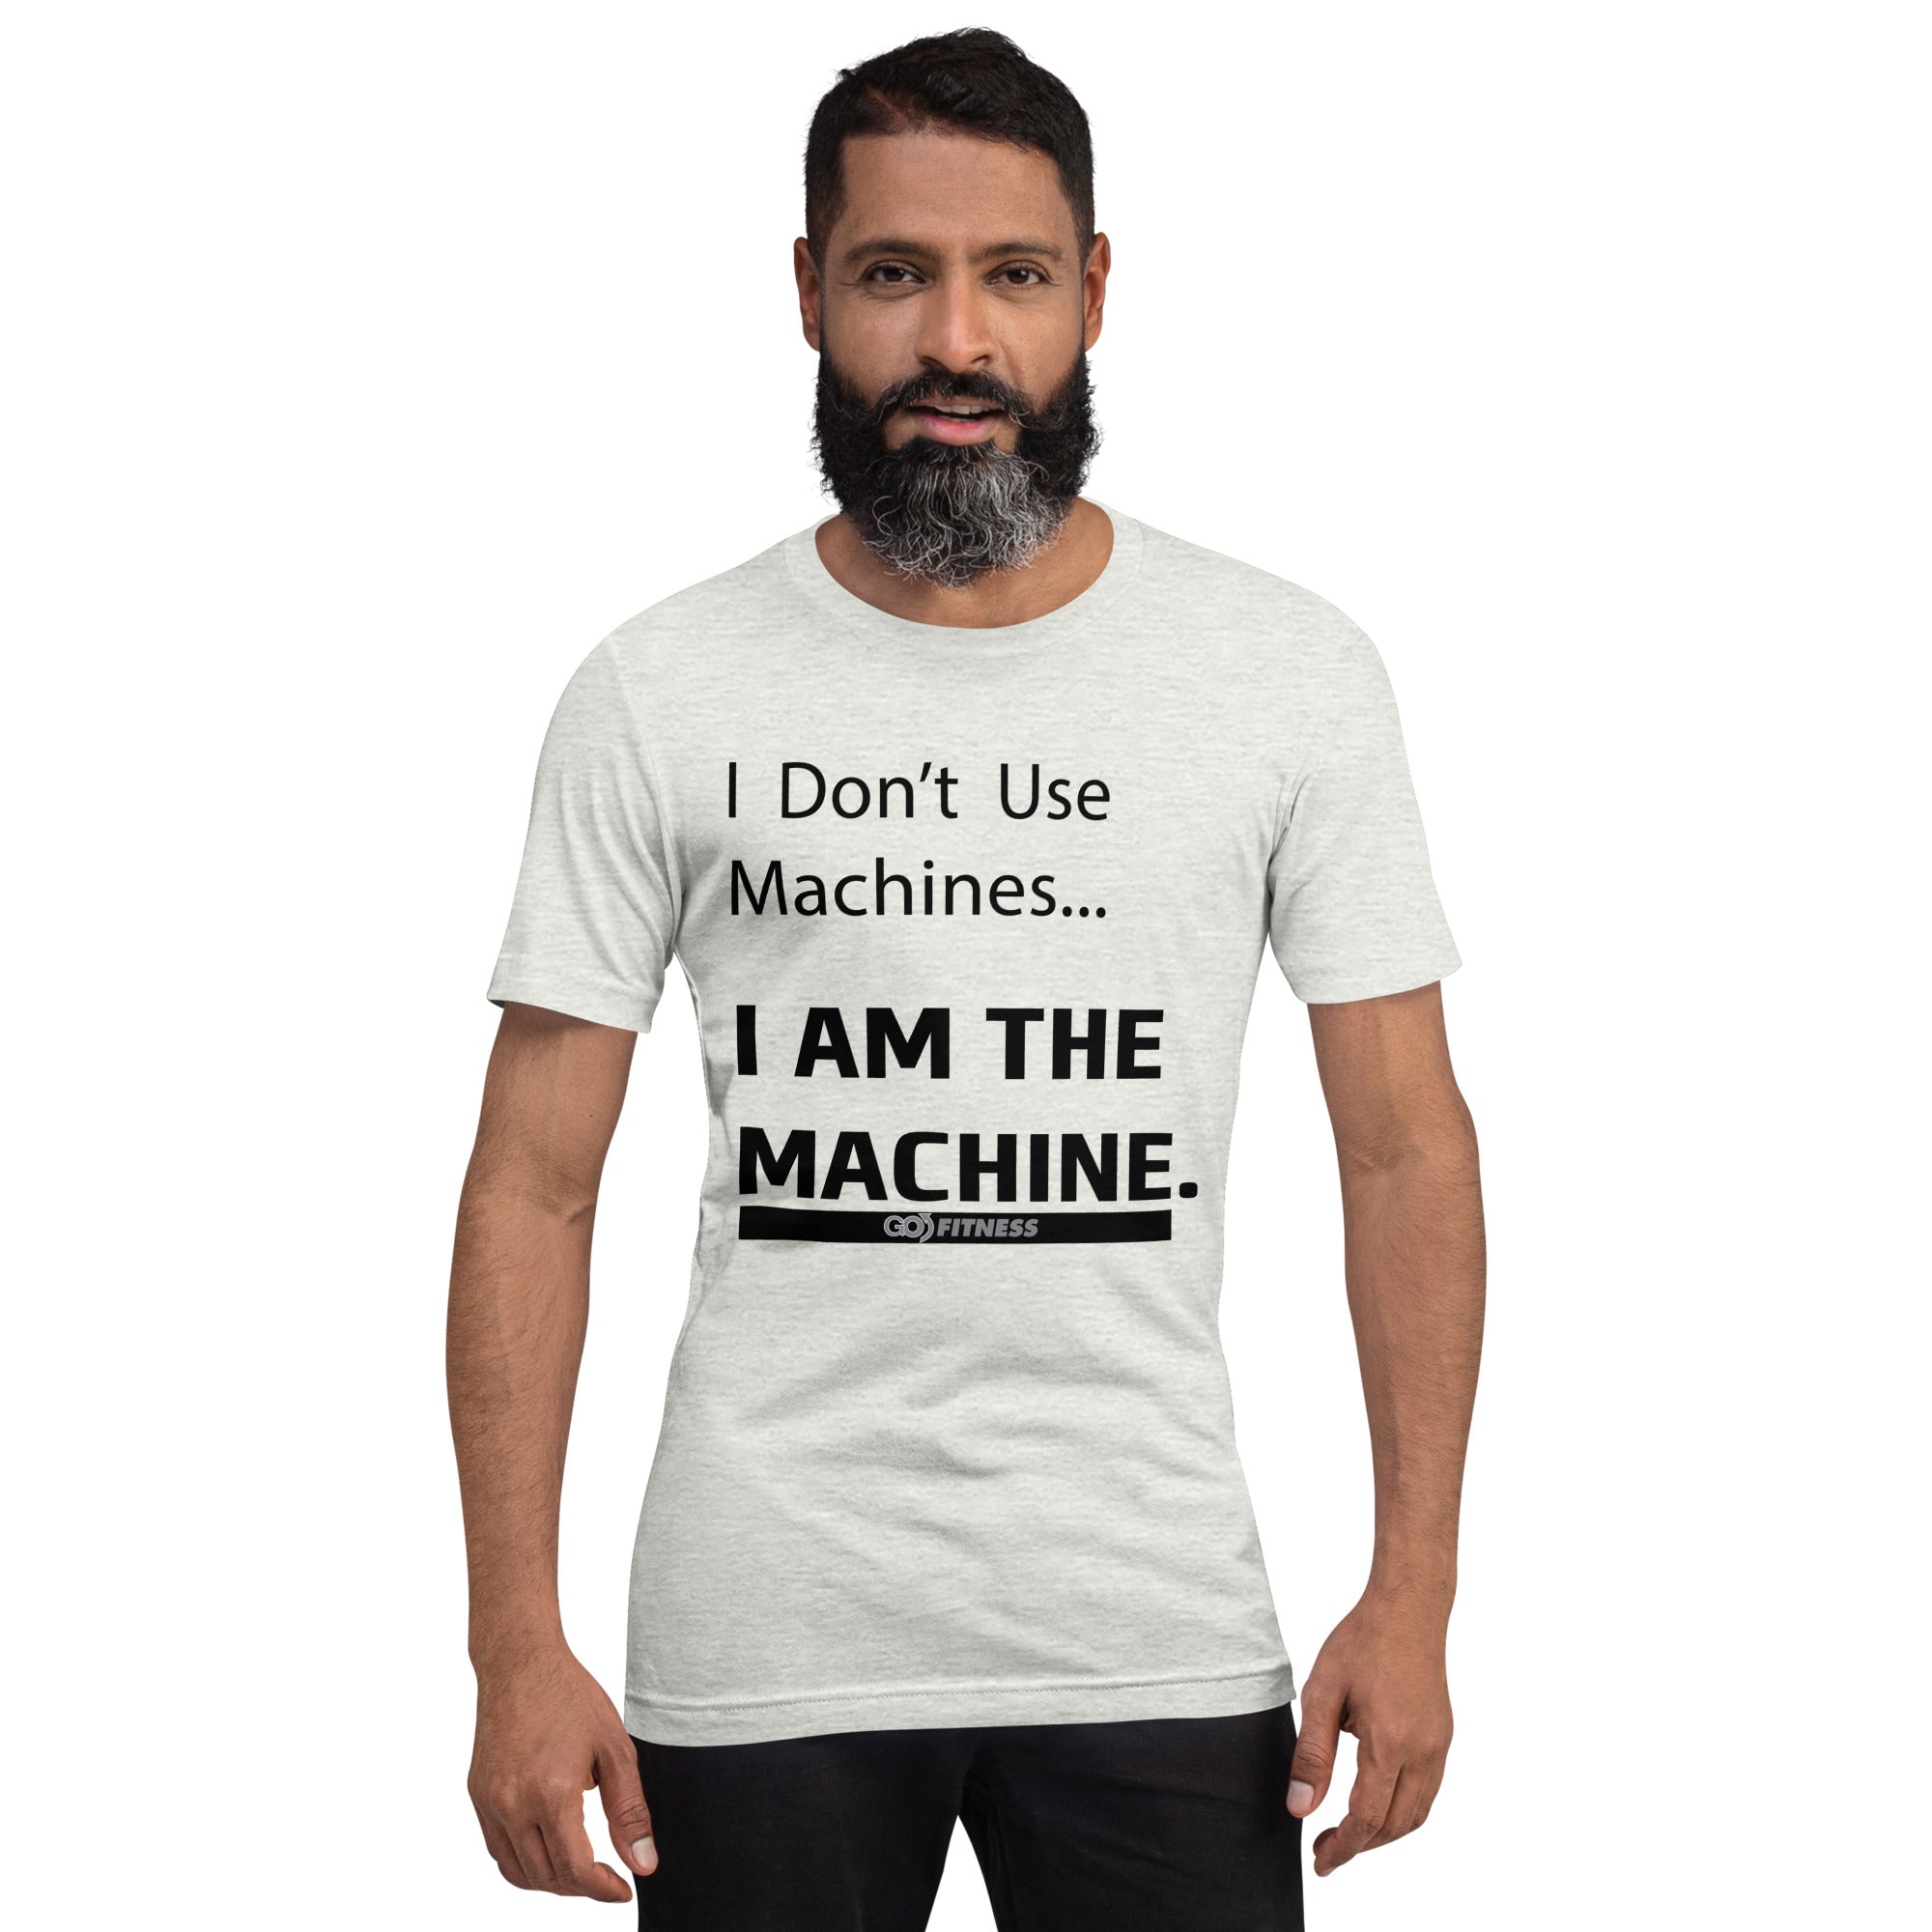 "I am the Machine" Unisex t-shirt